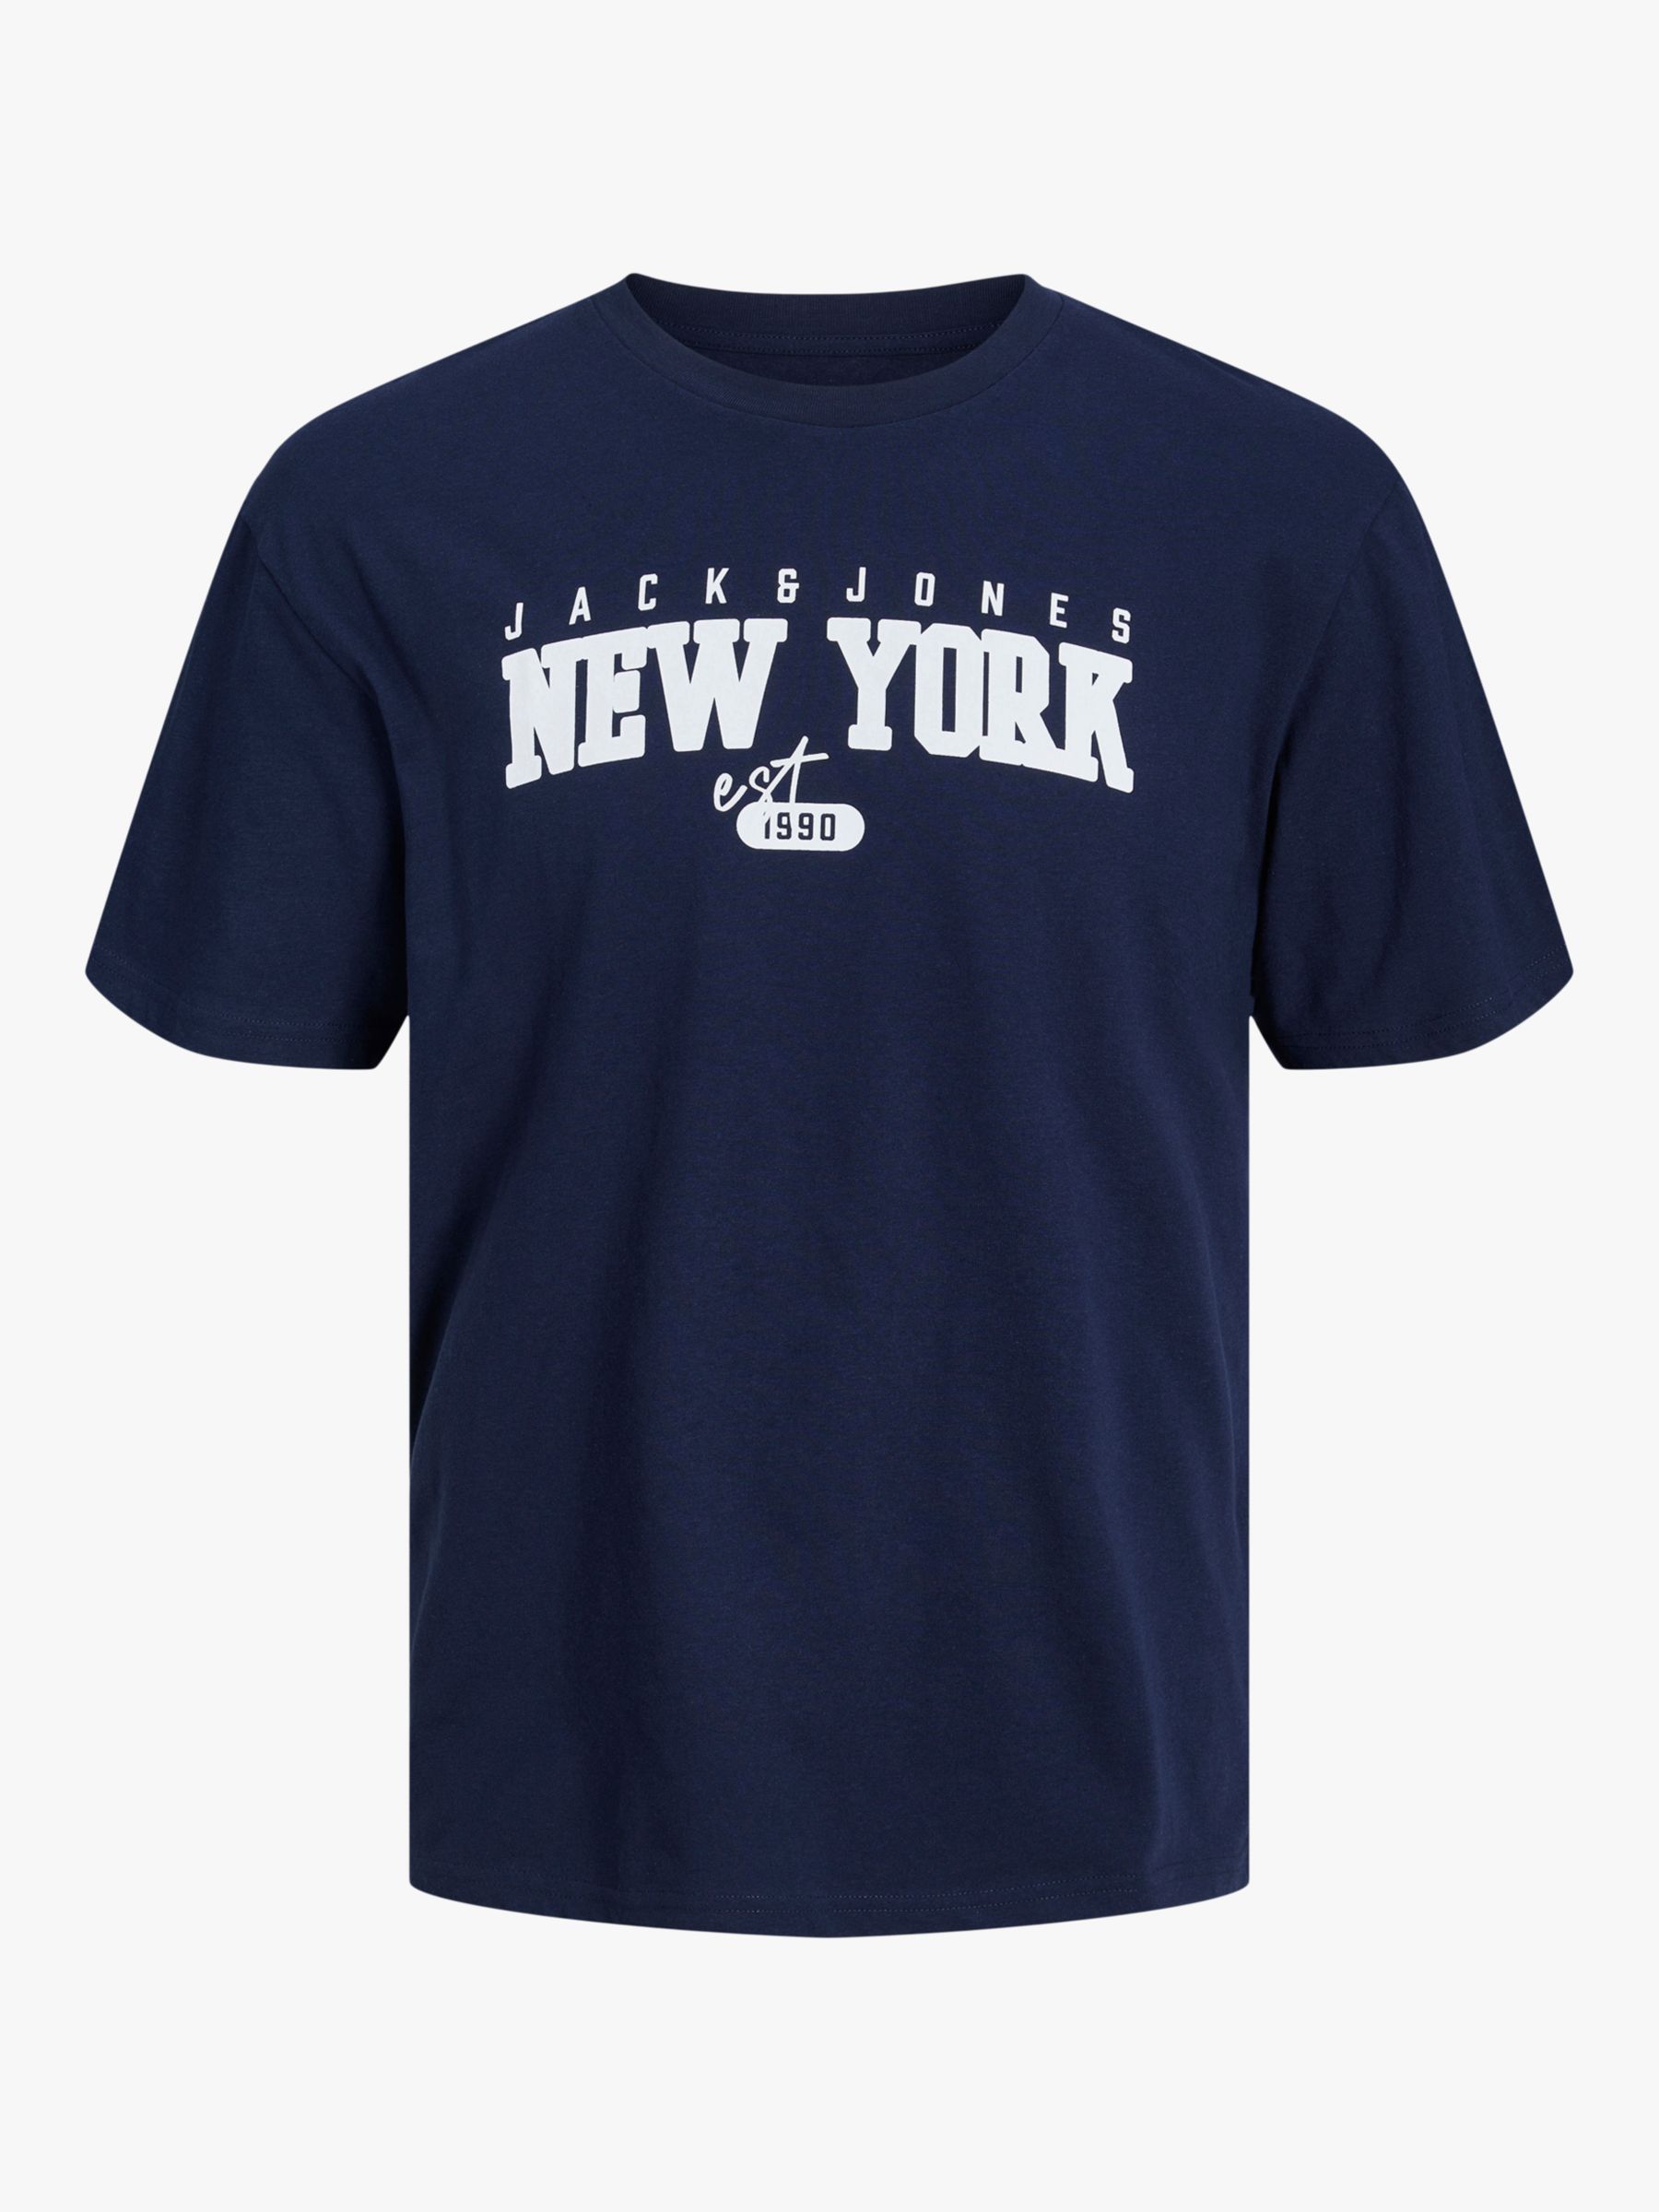 Jack Jones Kids' Cory New York Cotton T-Shirt, Navy, 16 years